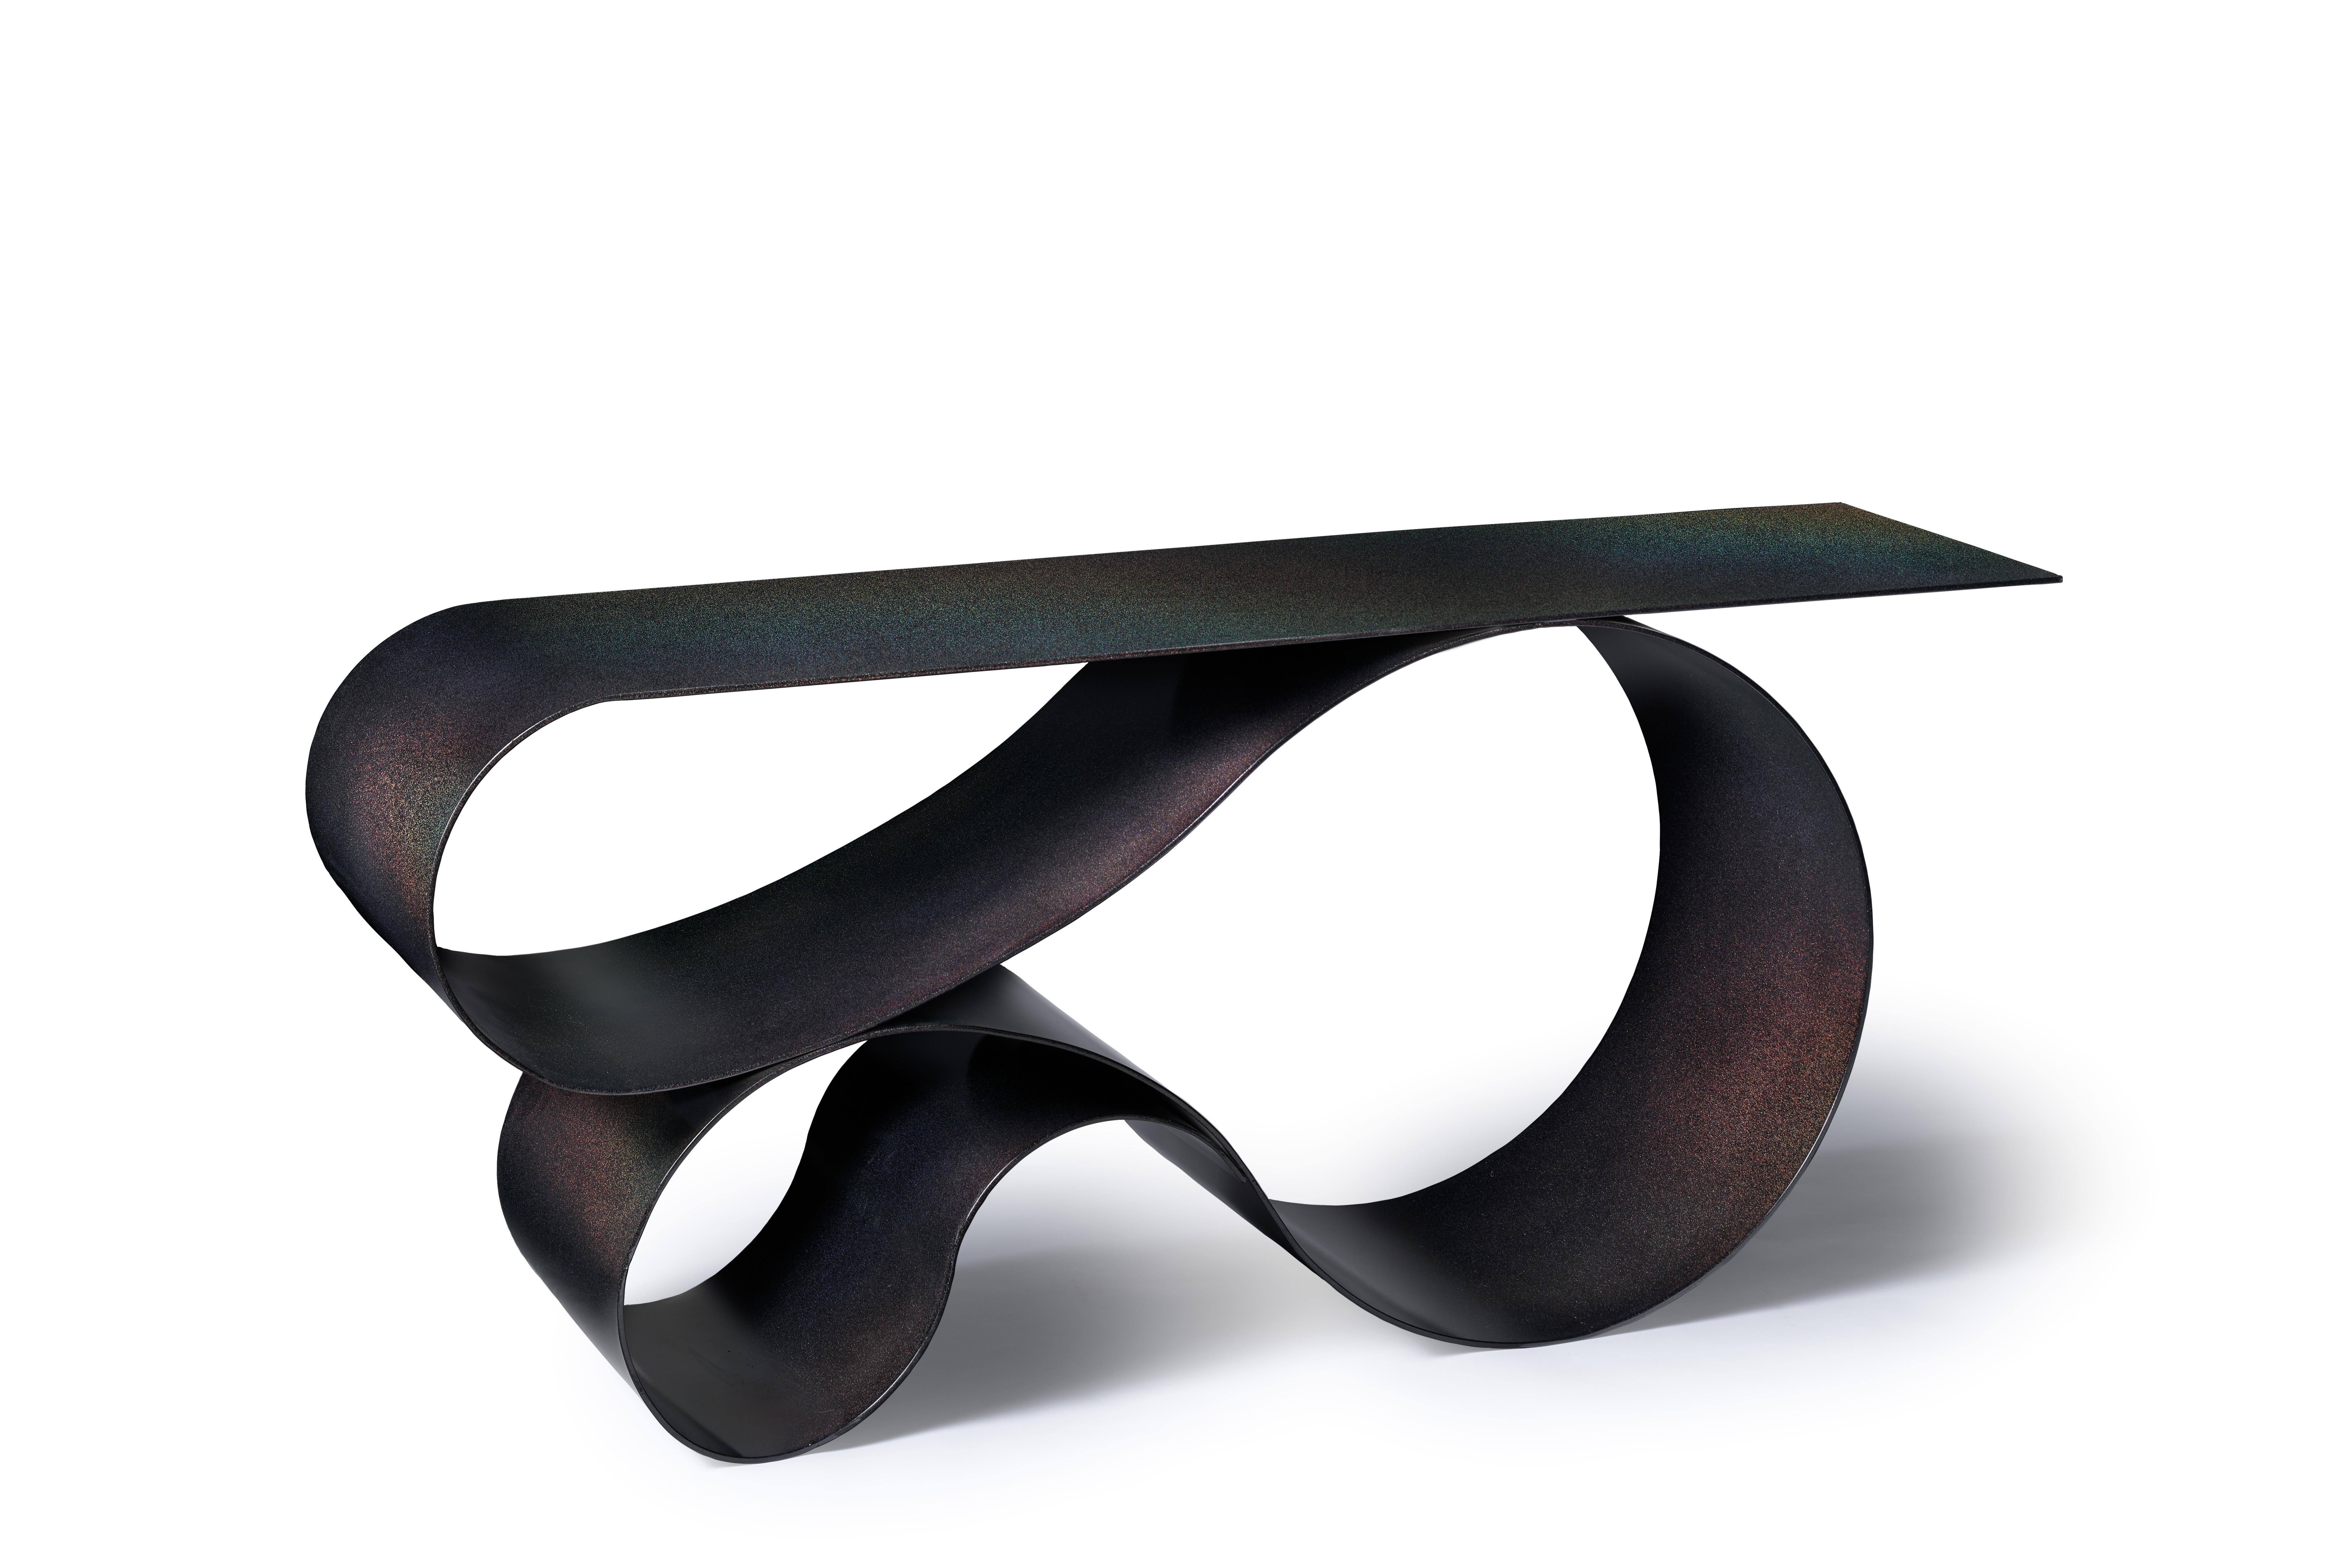 La forme lyrique emblématique de la série primée des tables Whorl est cette fois exécutée en aluminium à revêtement par poudre. l'aluminium de 1/4